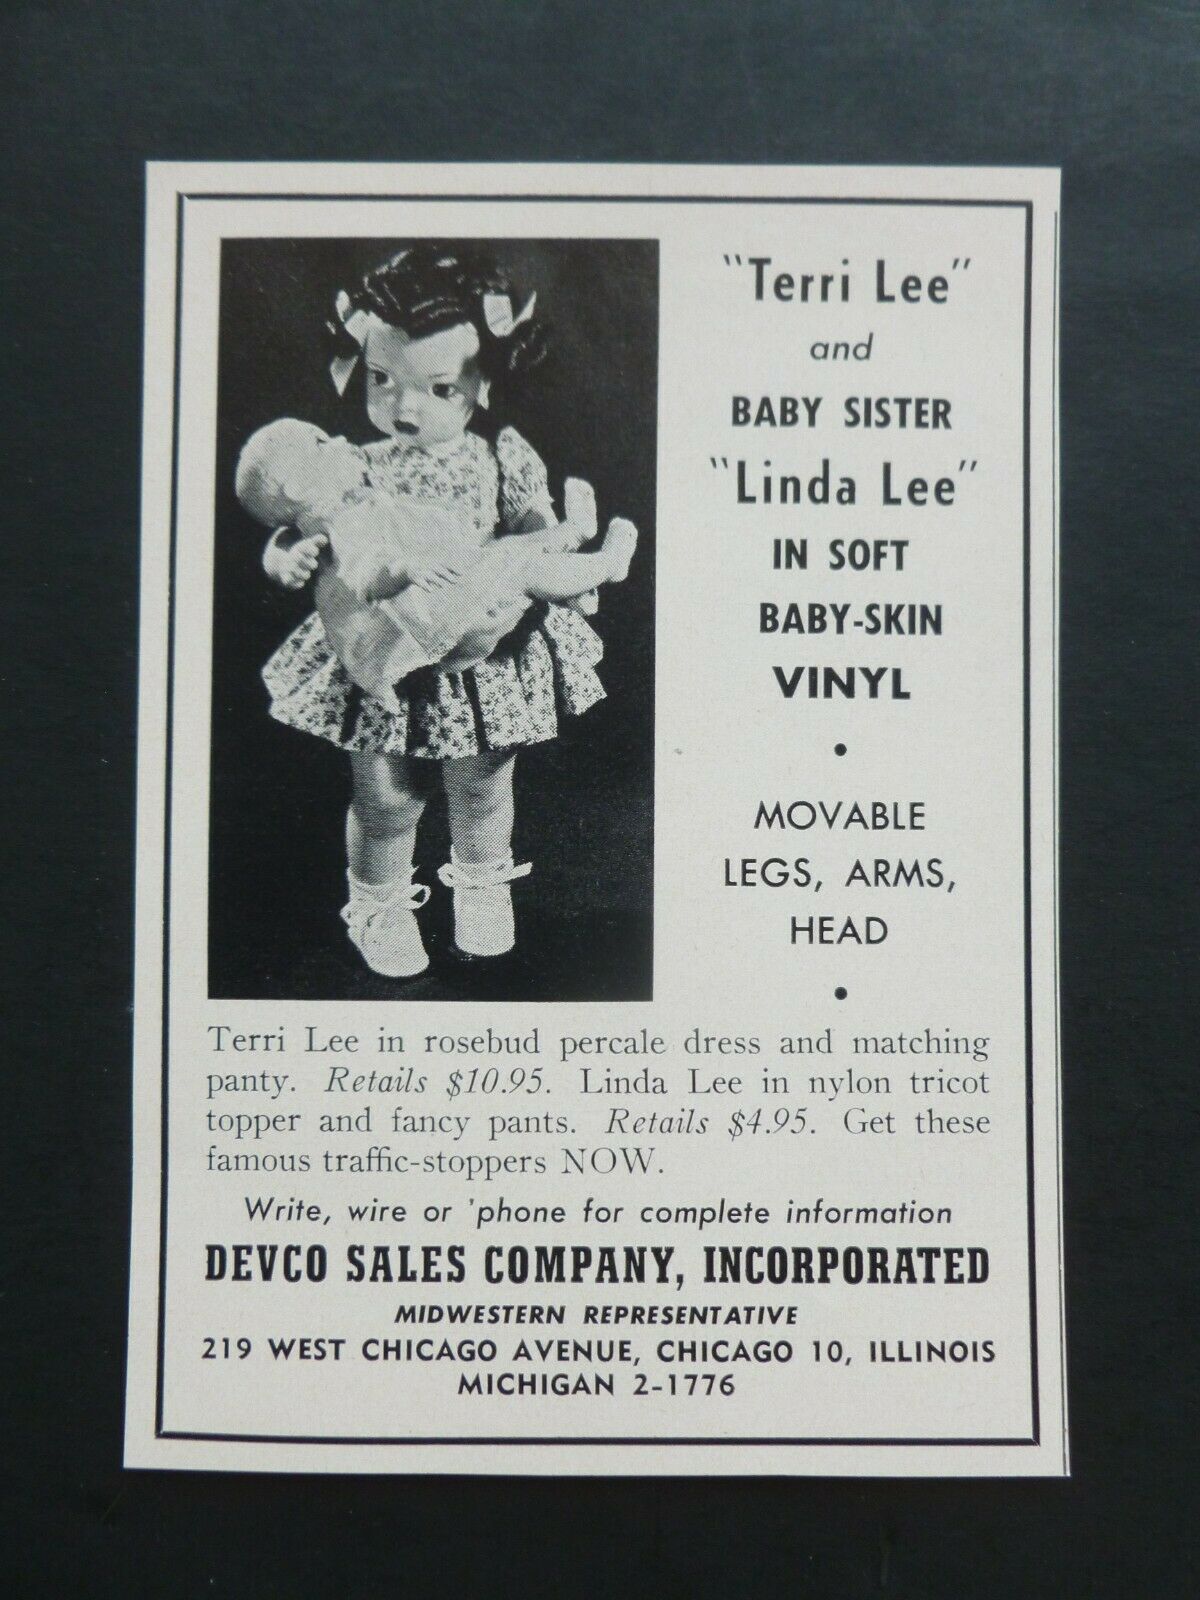 Rare Vtg 1951 Dealer Ad - Terri Lee & Linda Lee Doll 1950’s